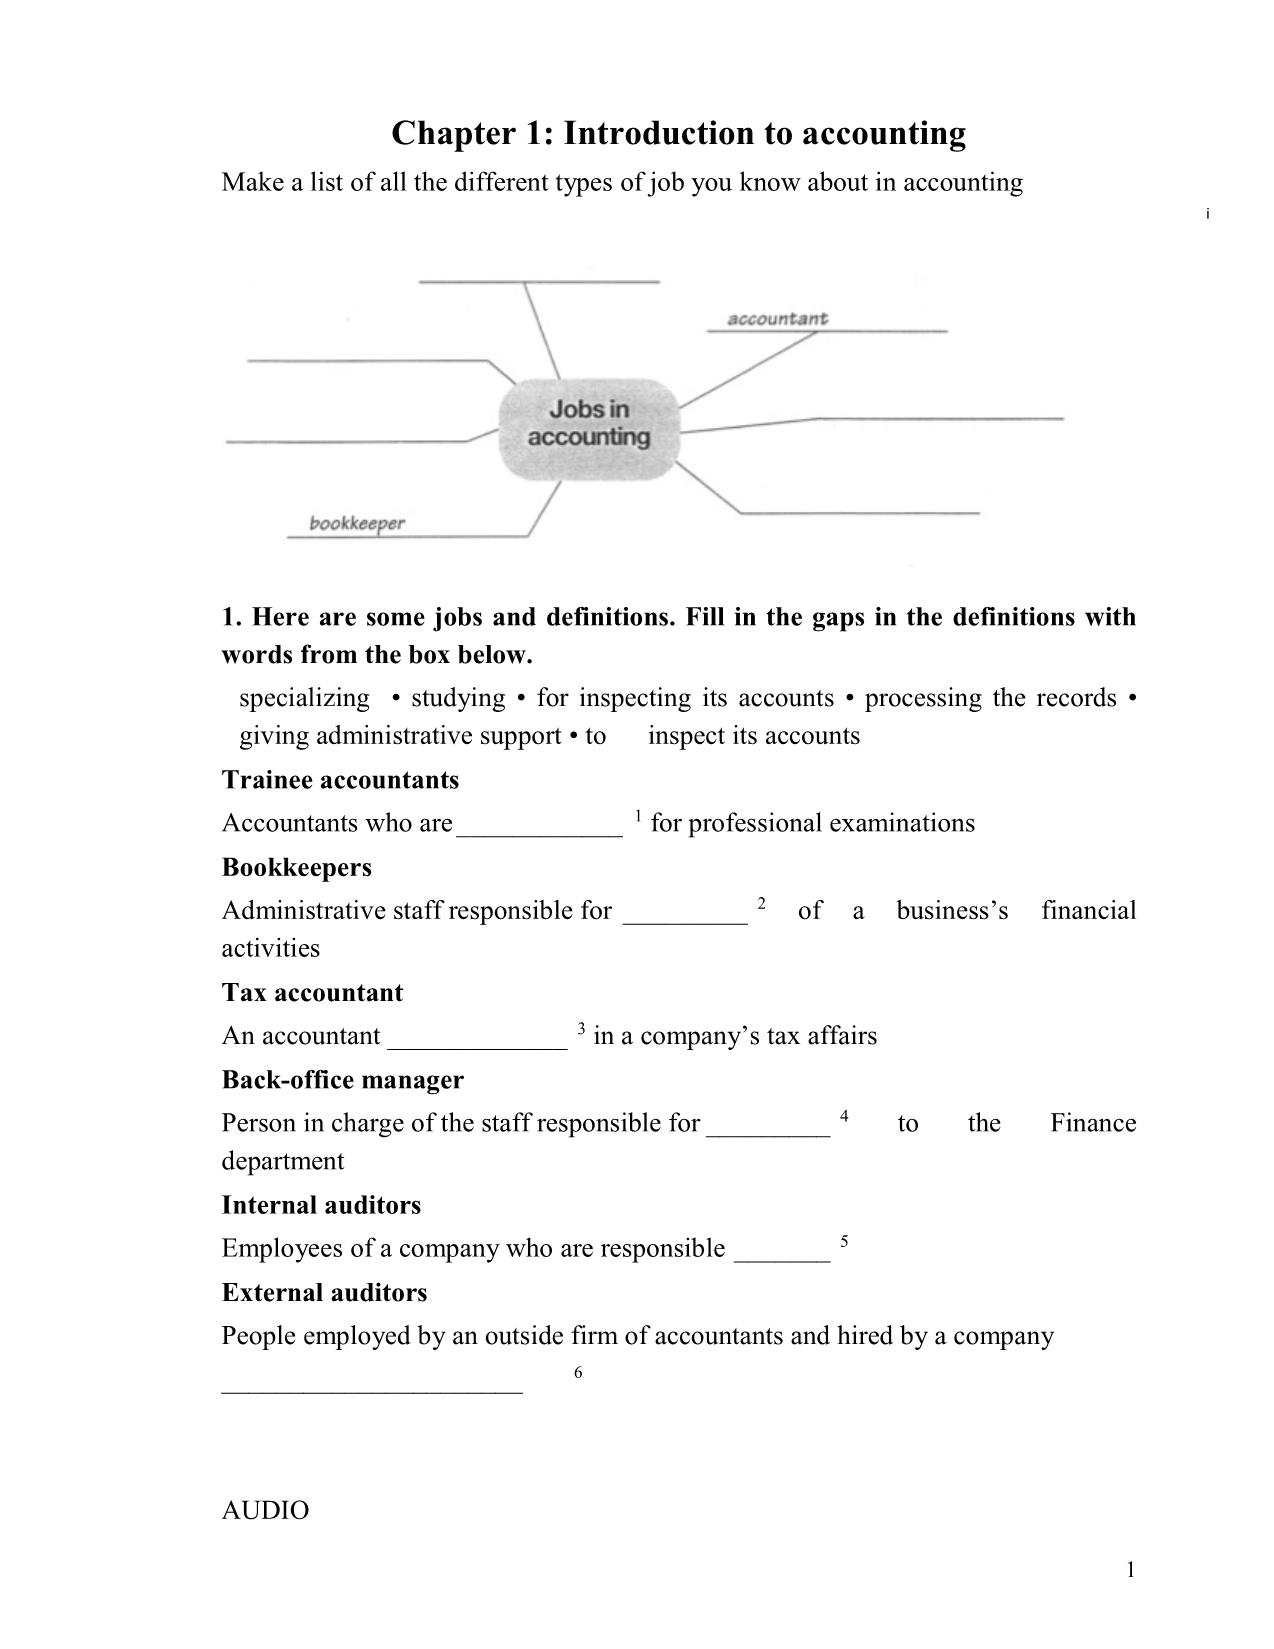 Giáo trình Anh văn chuyên ngành - Nghề: Kế toán doanh nghiệp trang 7